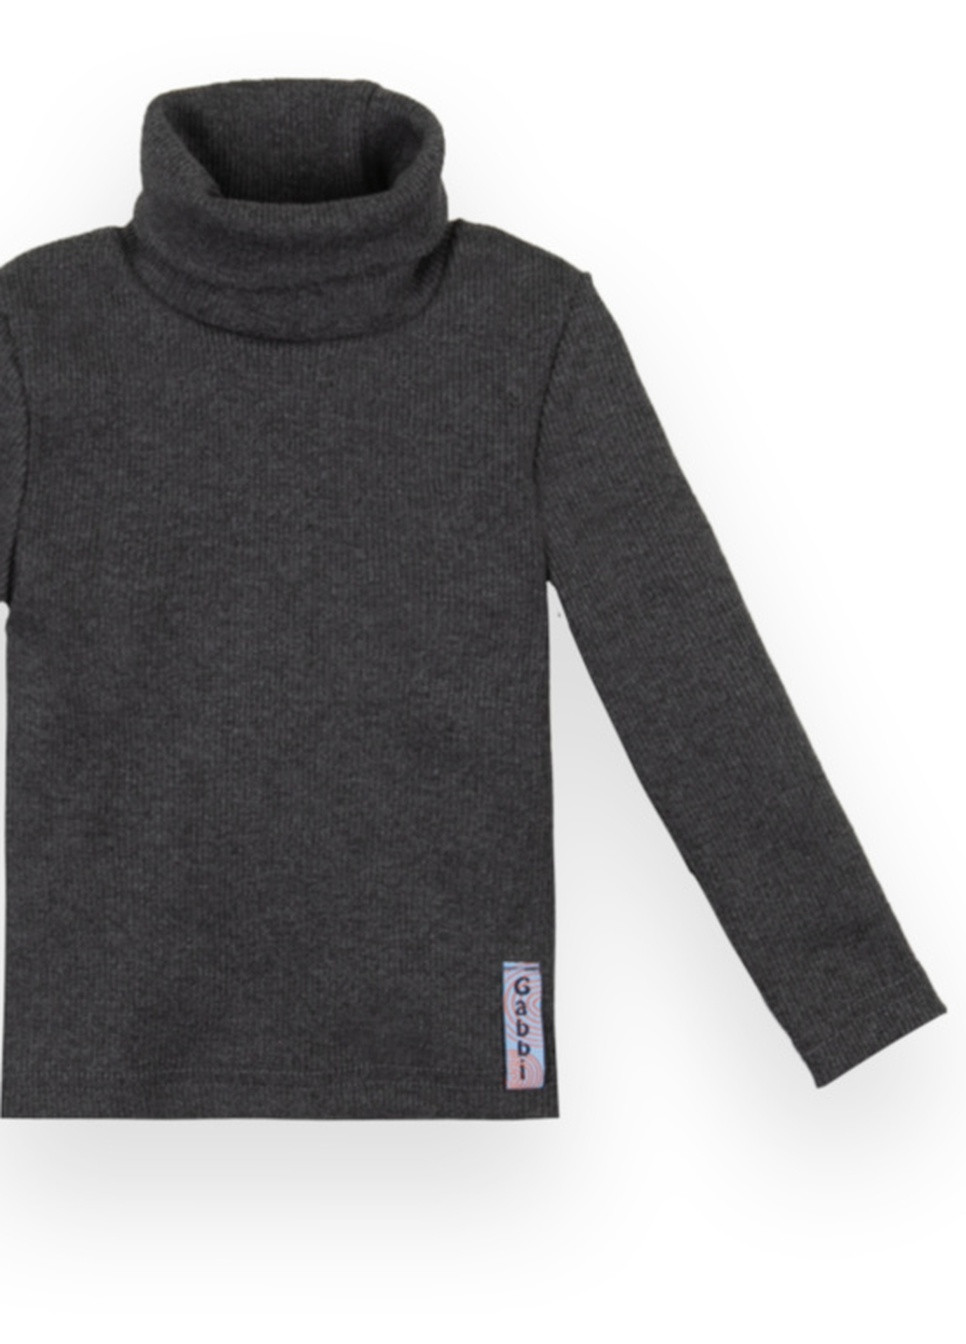 Чорний демісезонний дитячий светр sv-21-10-1 стиль Габби